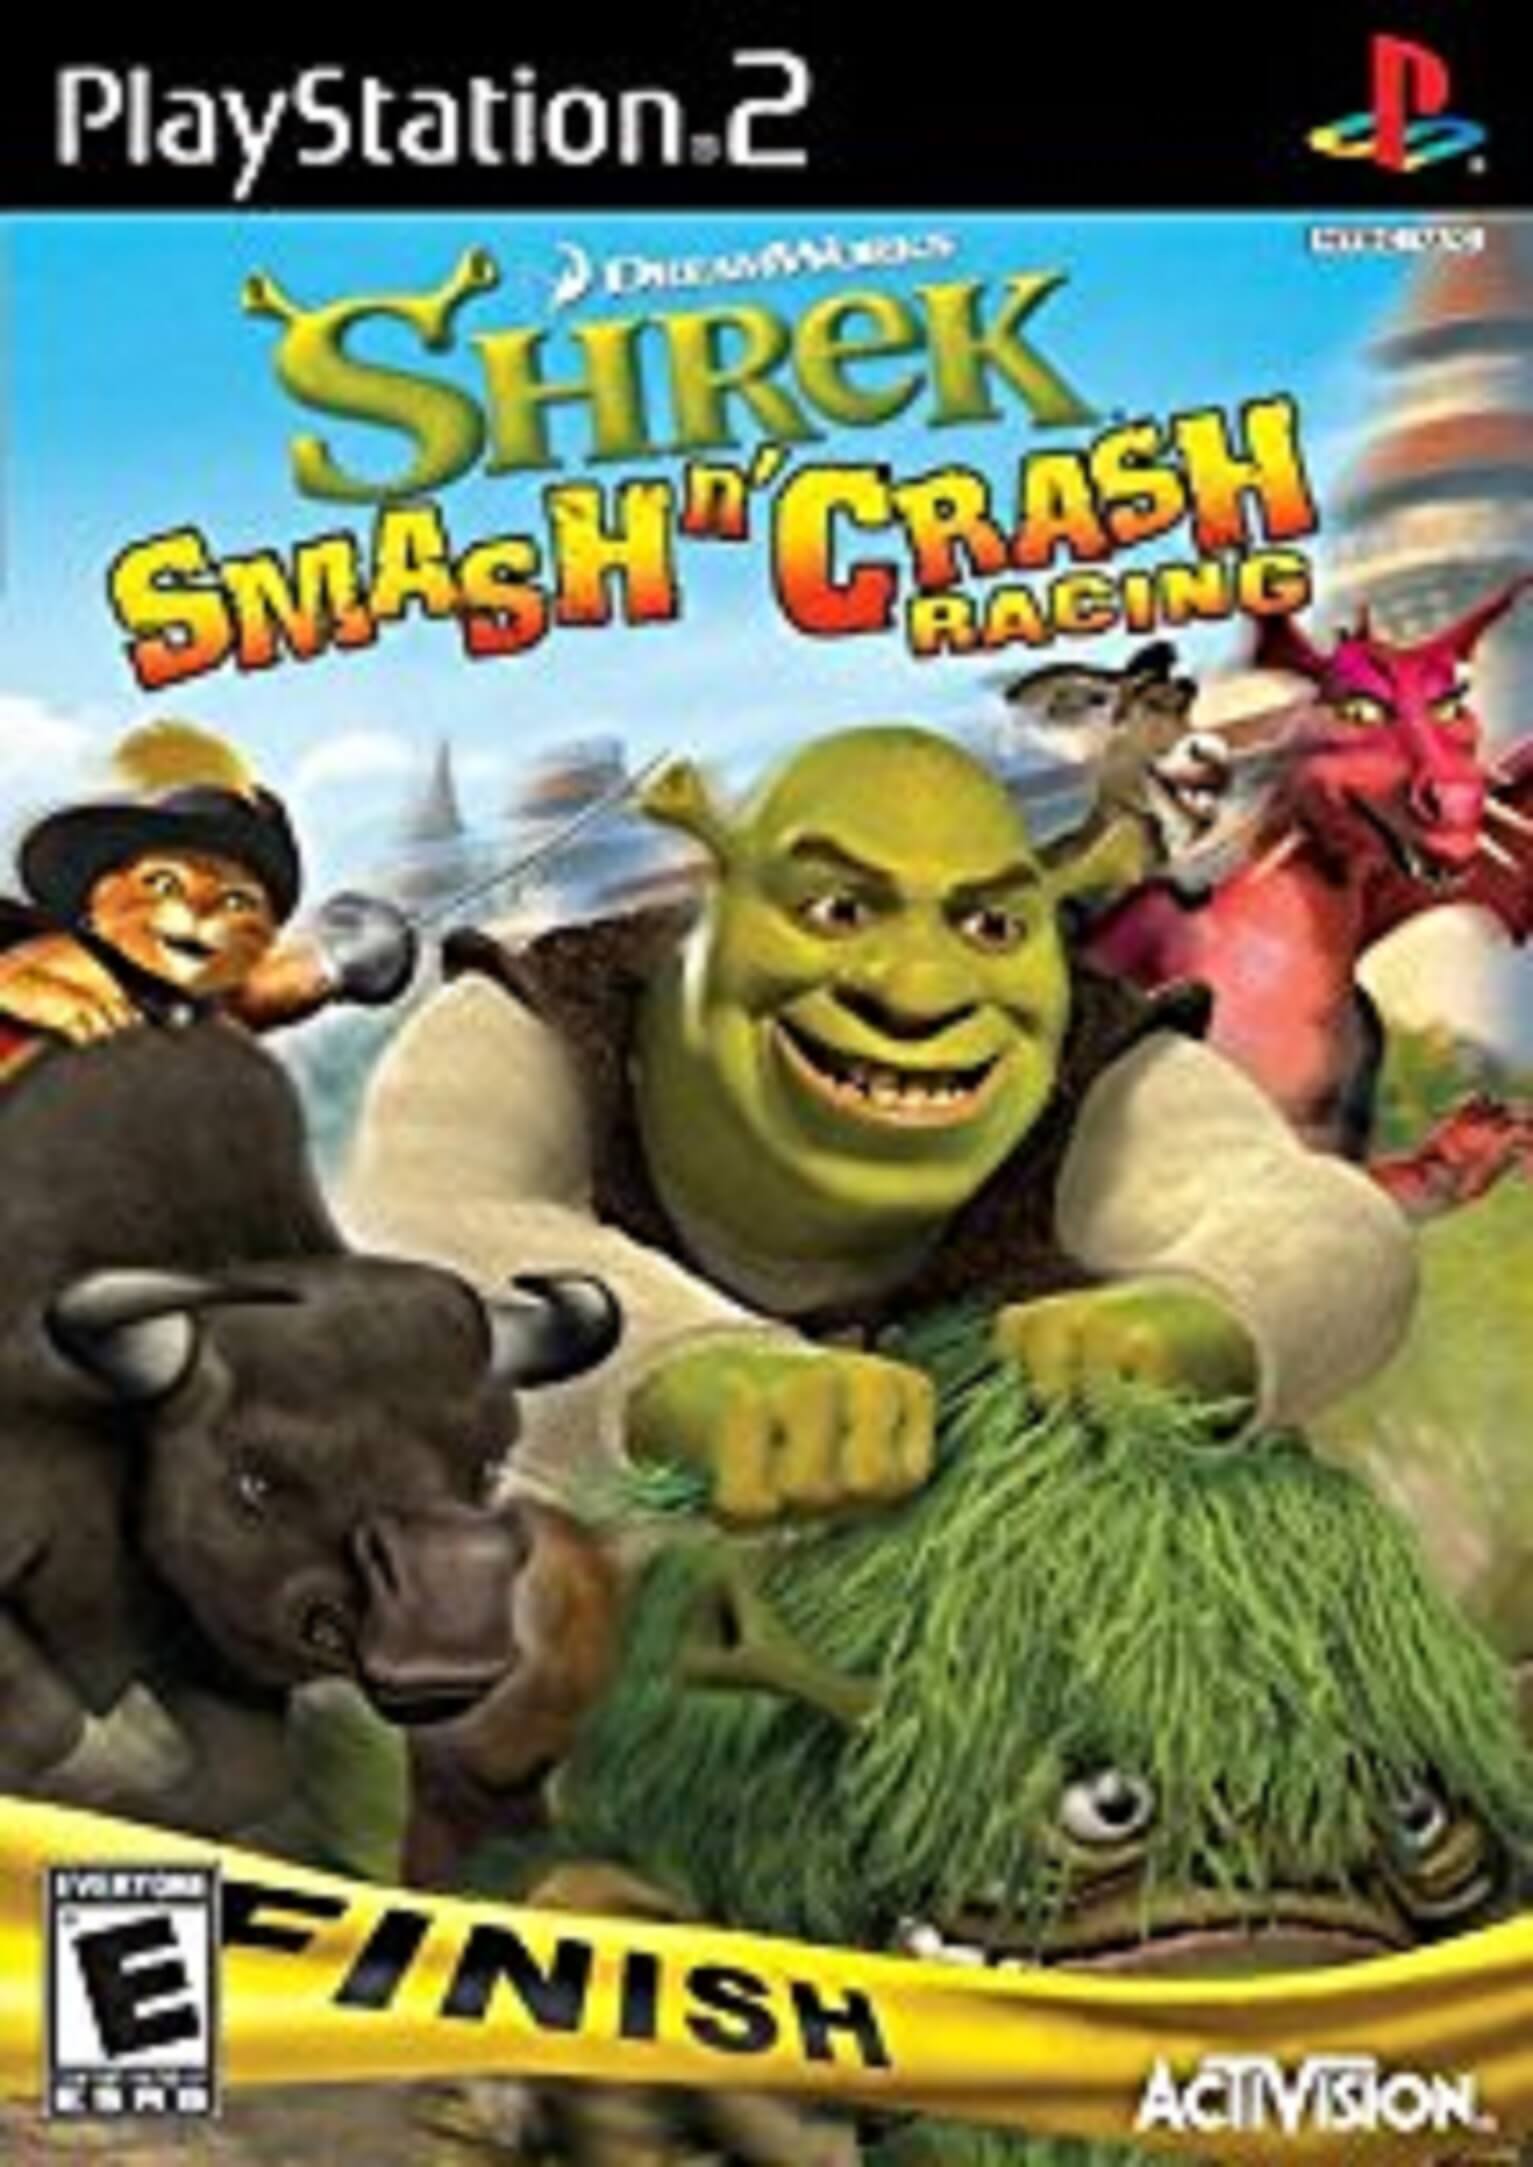 Shrek Smash n’ Crash Racing